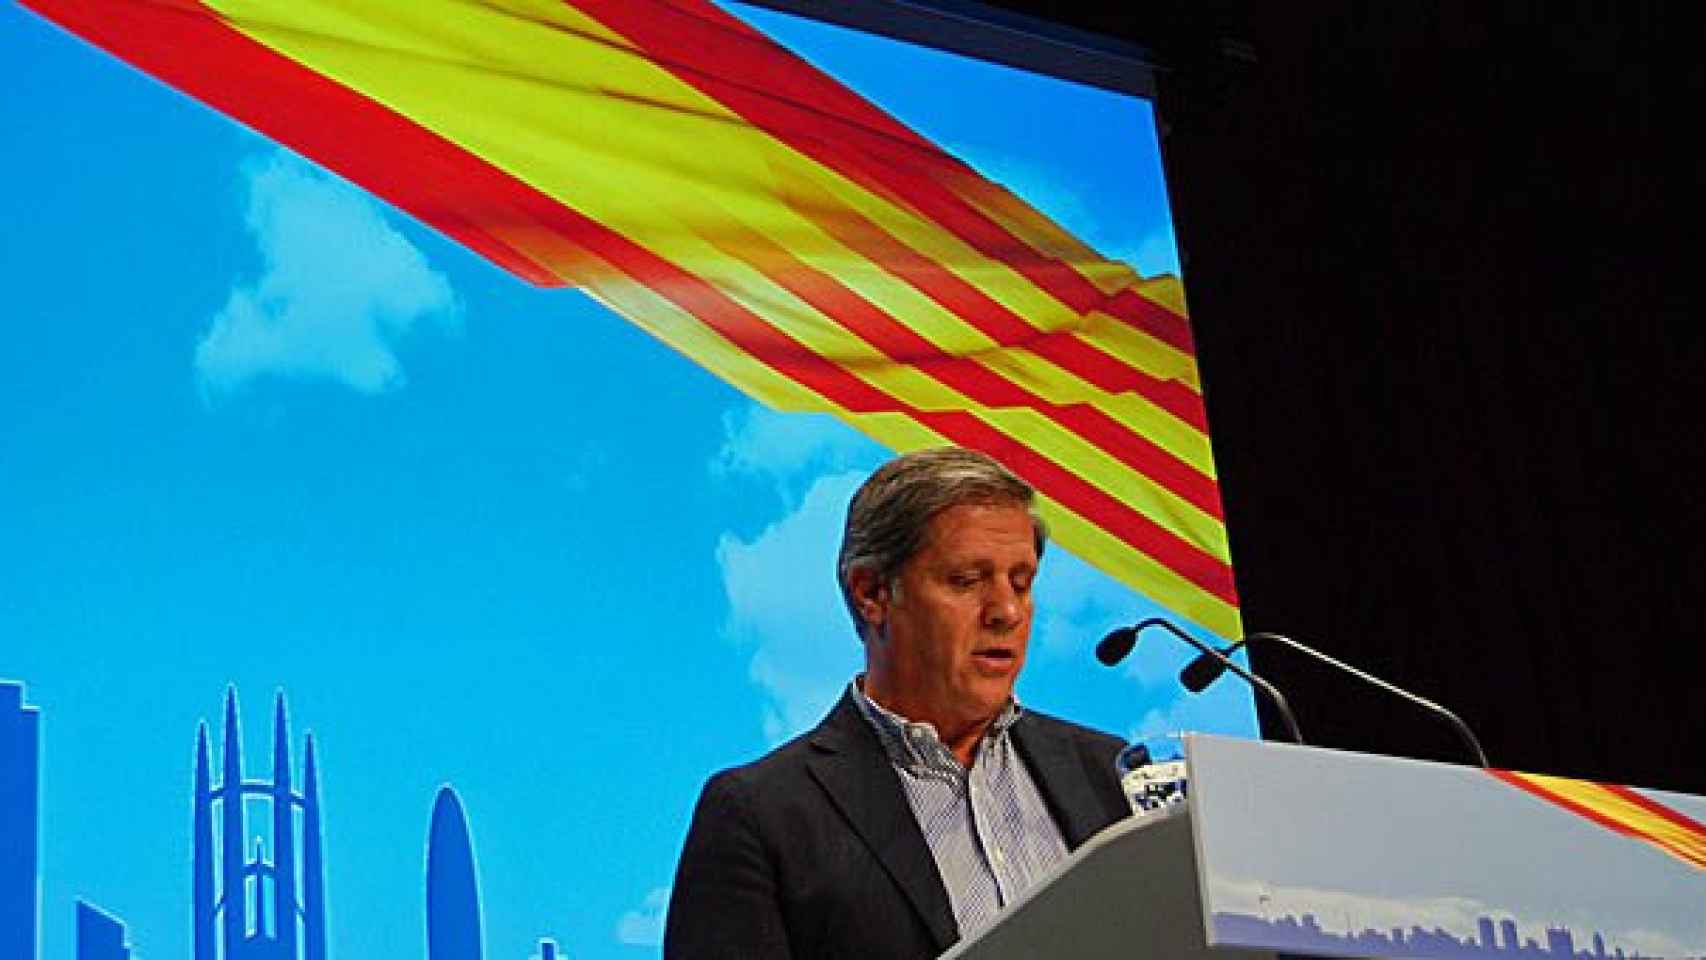 El líder del PP en el Ayuntamiento de Barcelona, Alberto Fernández Díaz, durante su conferencia pronunciada en el Borne Centro Cultural